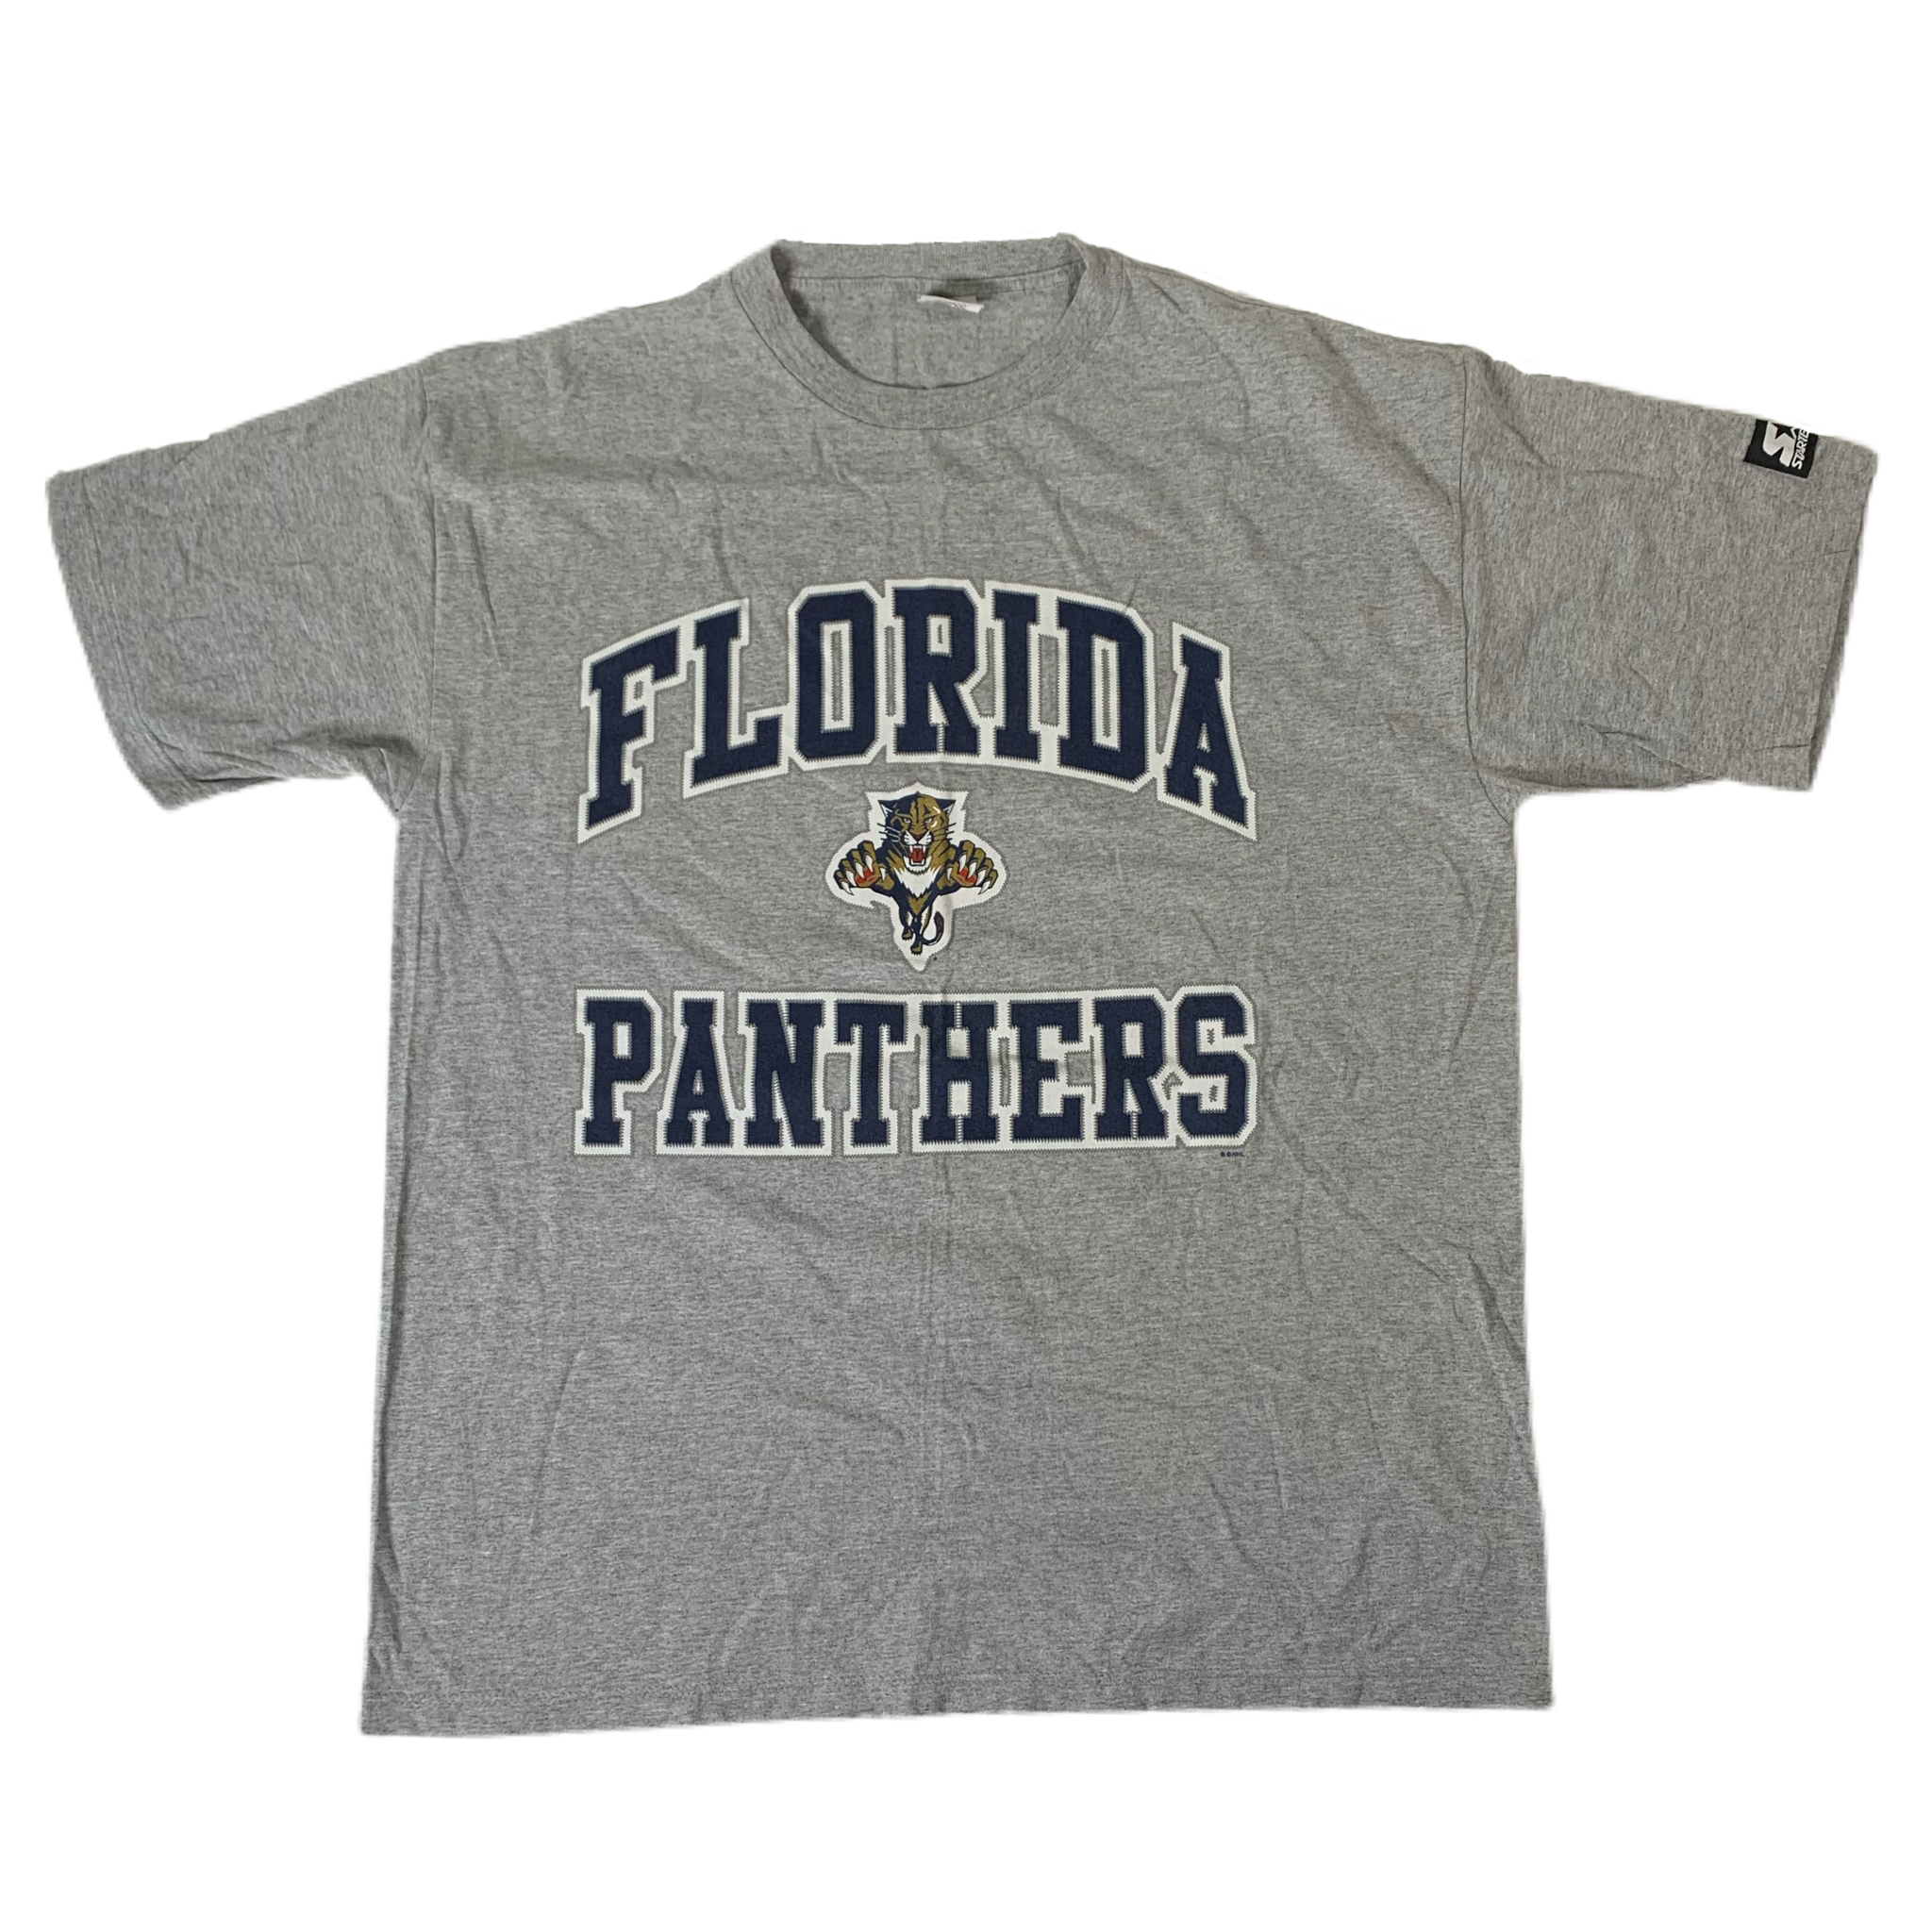 Florida Panthers Sweatshirt 